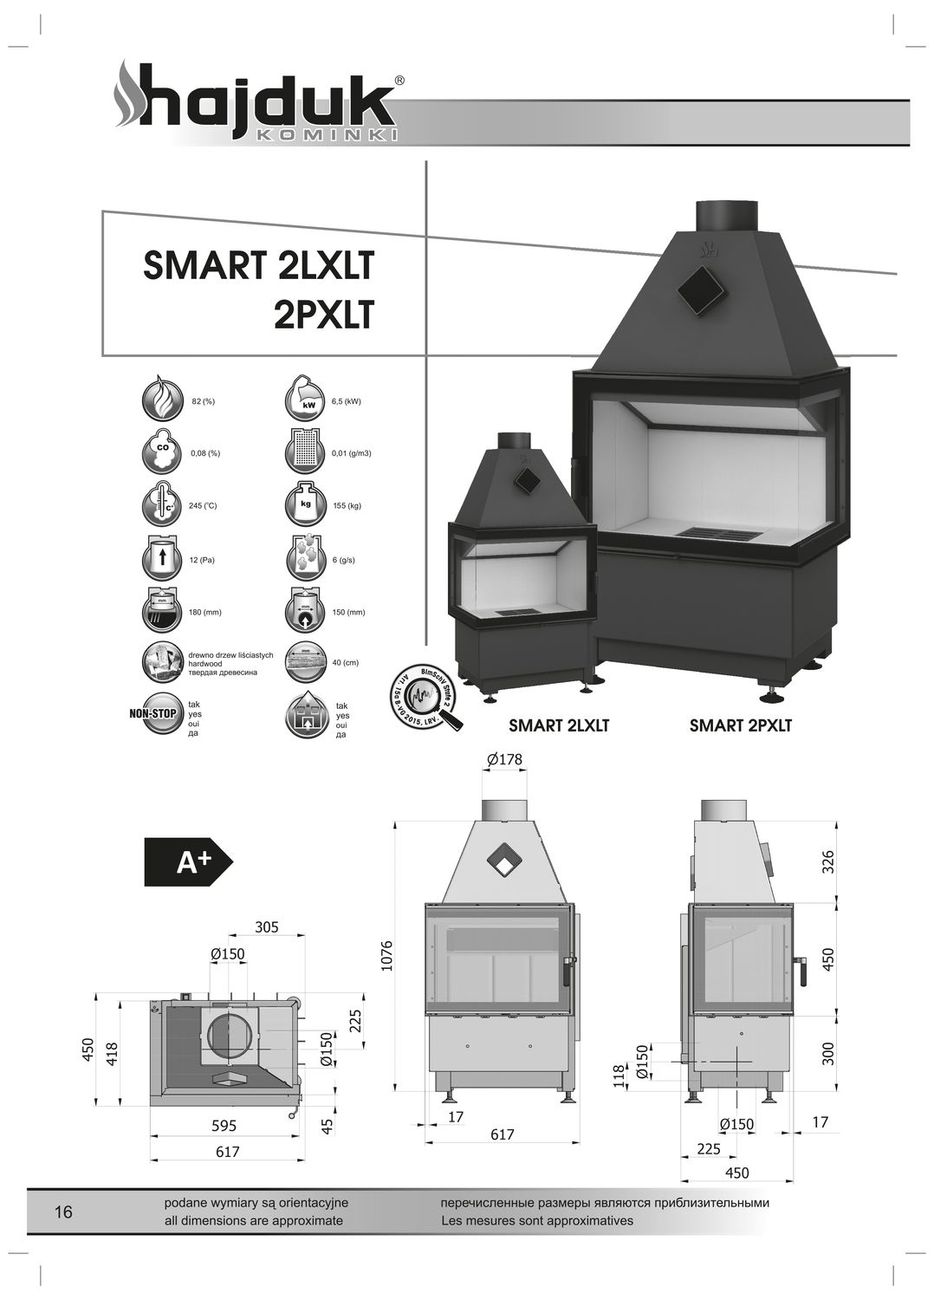 Hajduk Smart 2LXLT lub 2PXLT wymiary wkładu kominkowego Hajduk Smart 2LXLT lub 2PXLT